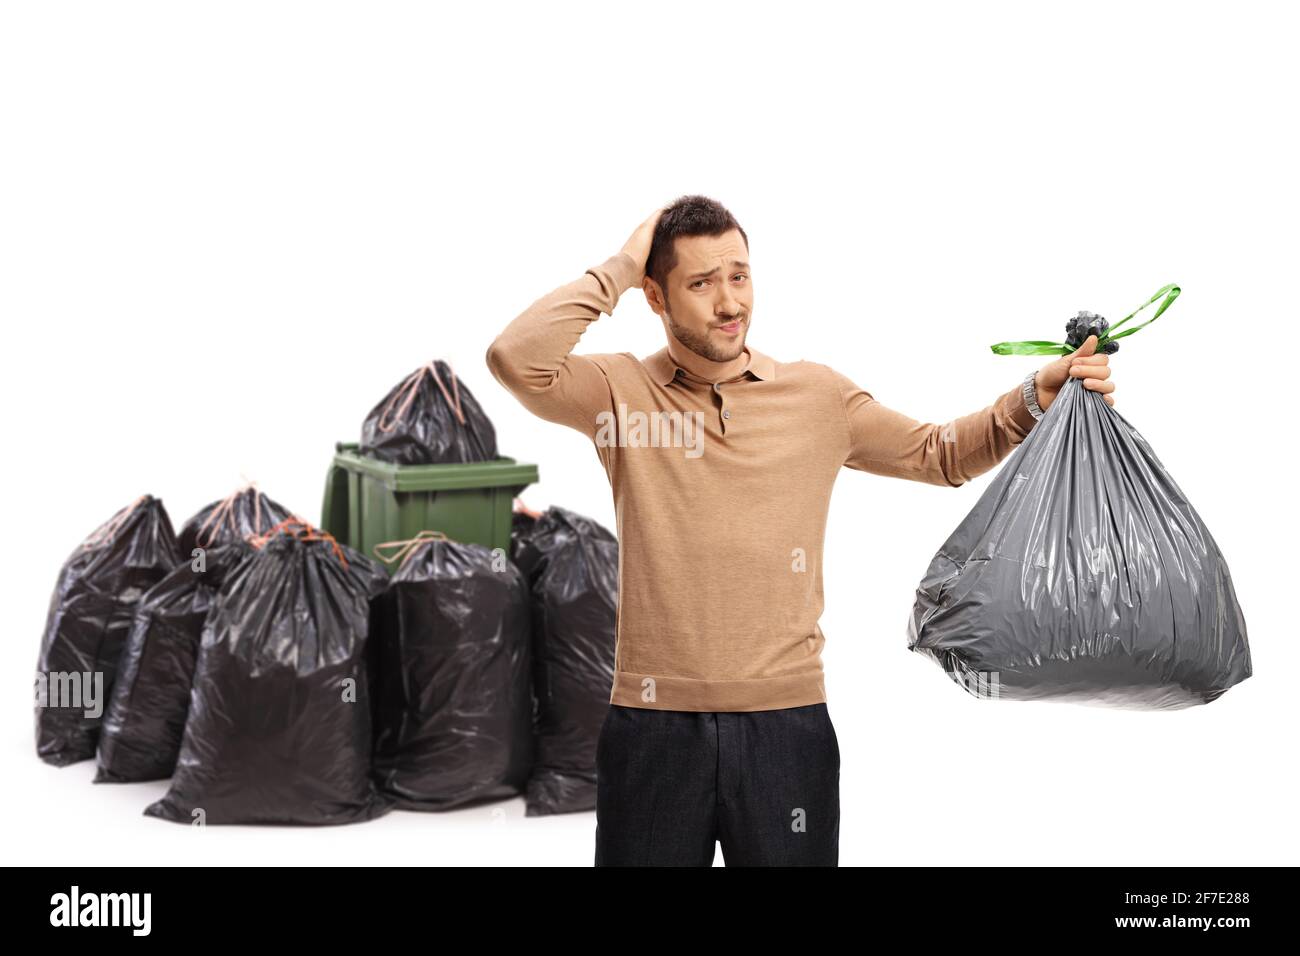 Uomo con un sacchetto di immondizia che tiene la testa nell'incredulità di fronte a un contenitore isolato su sfondo bianco Foto Stock